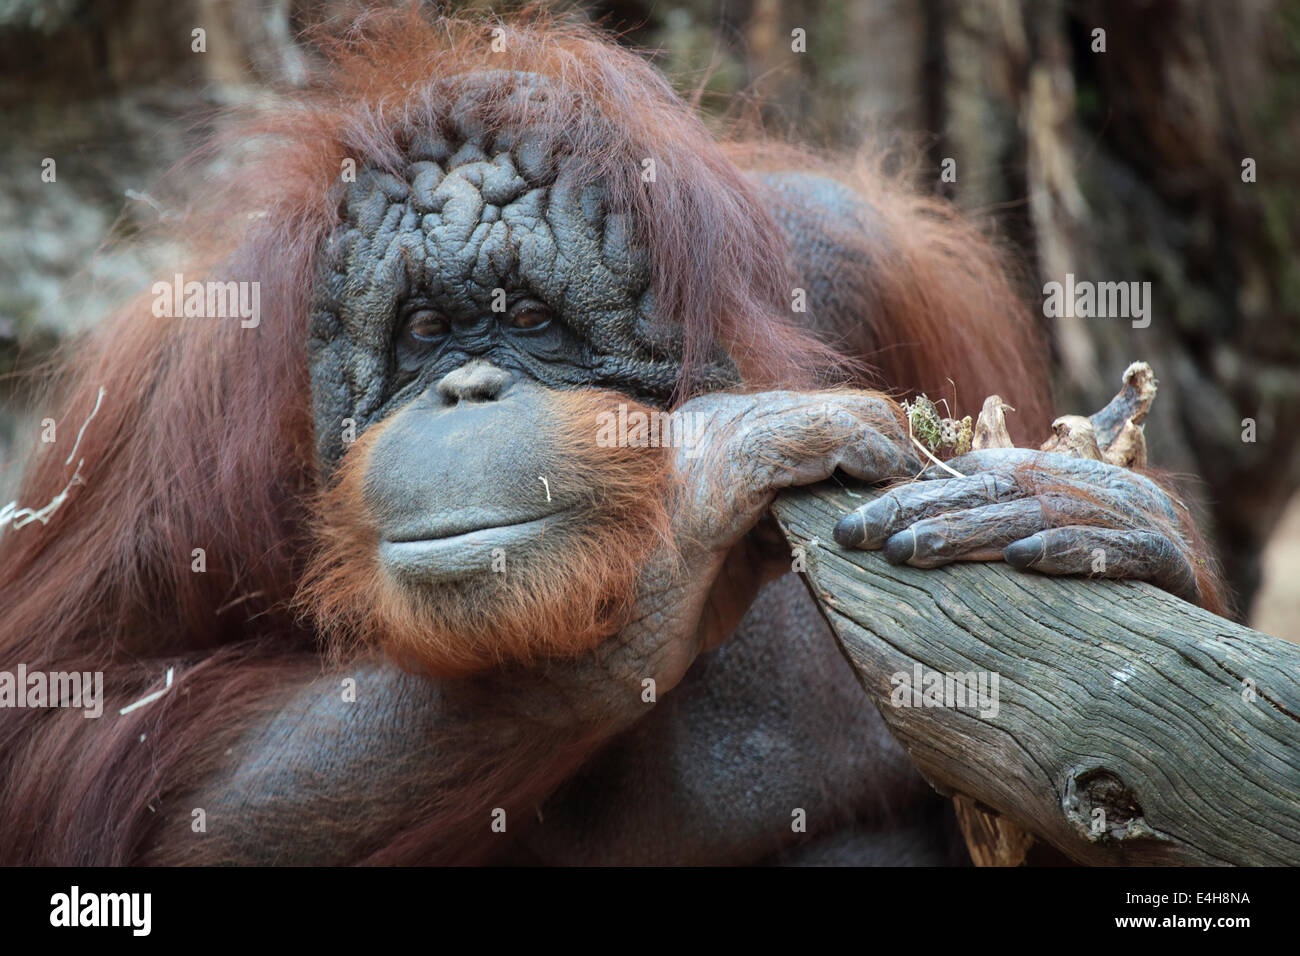 Portrait d'orang-outan, Pongo pygmaeus, un grand singe originaire de l'île de Bornéo Banque D'Images